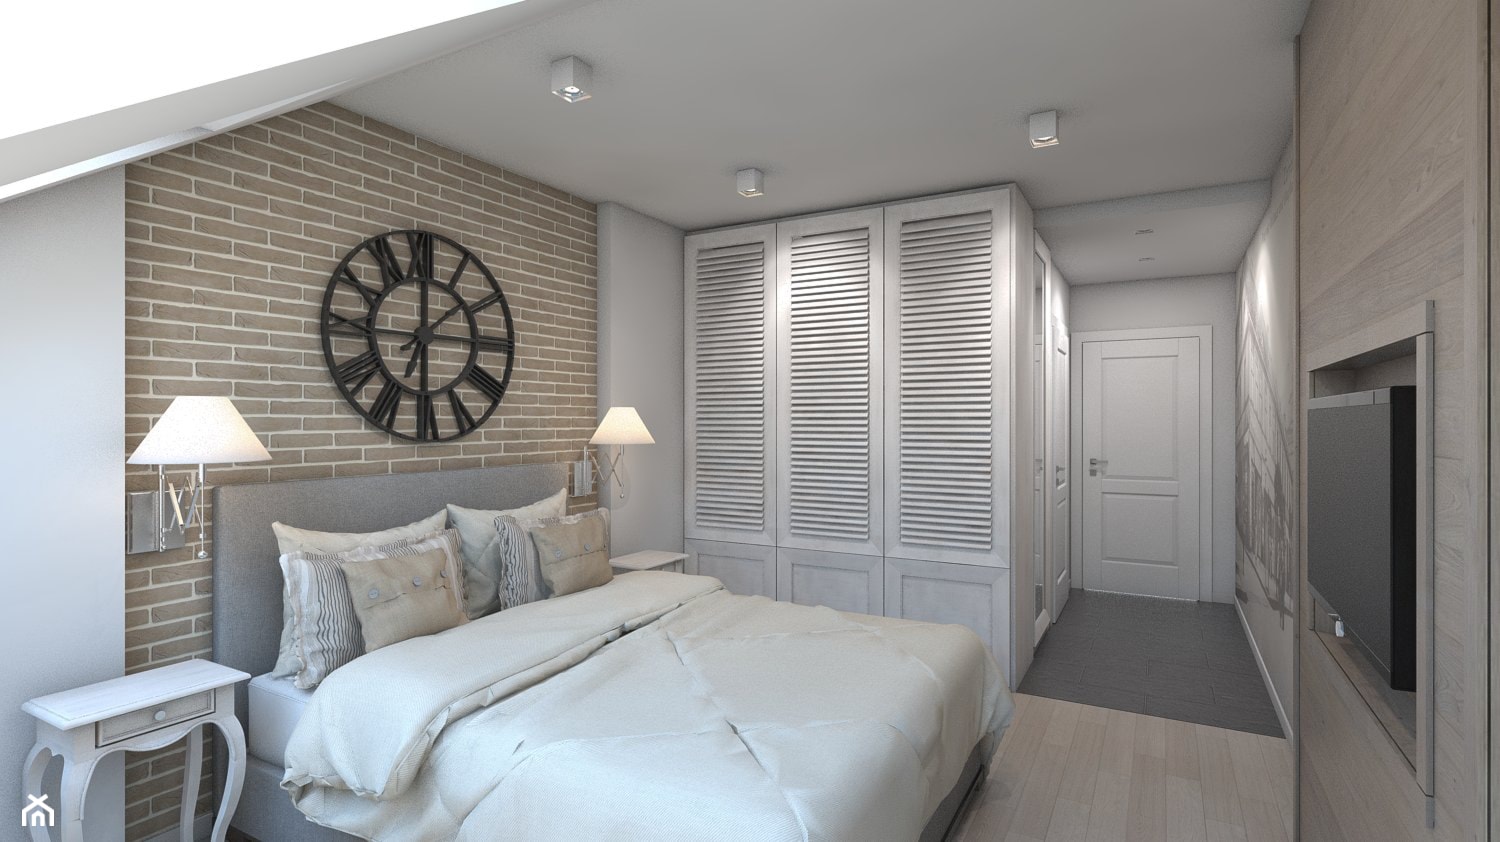 SPA + HOTEL - Średnia biała brązowa sypialnia - zdjęcie od A2 STUDIO pracownia architektury - Homebook